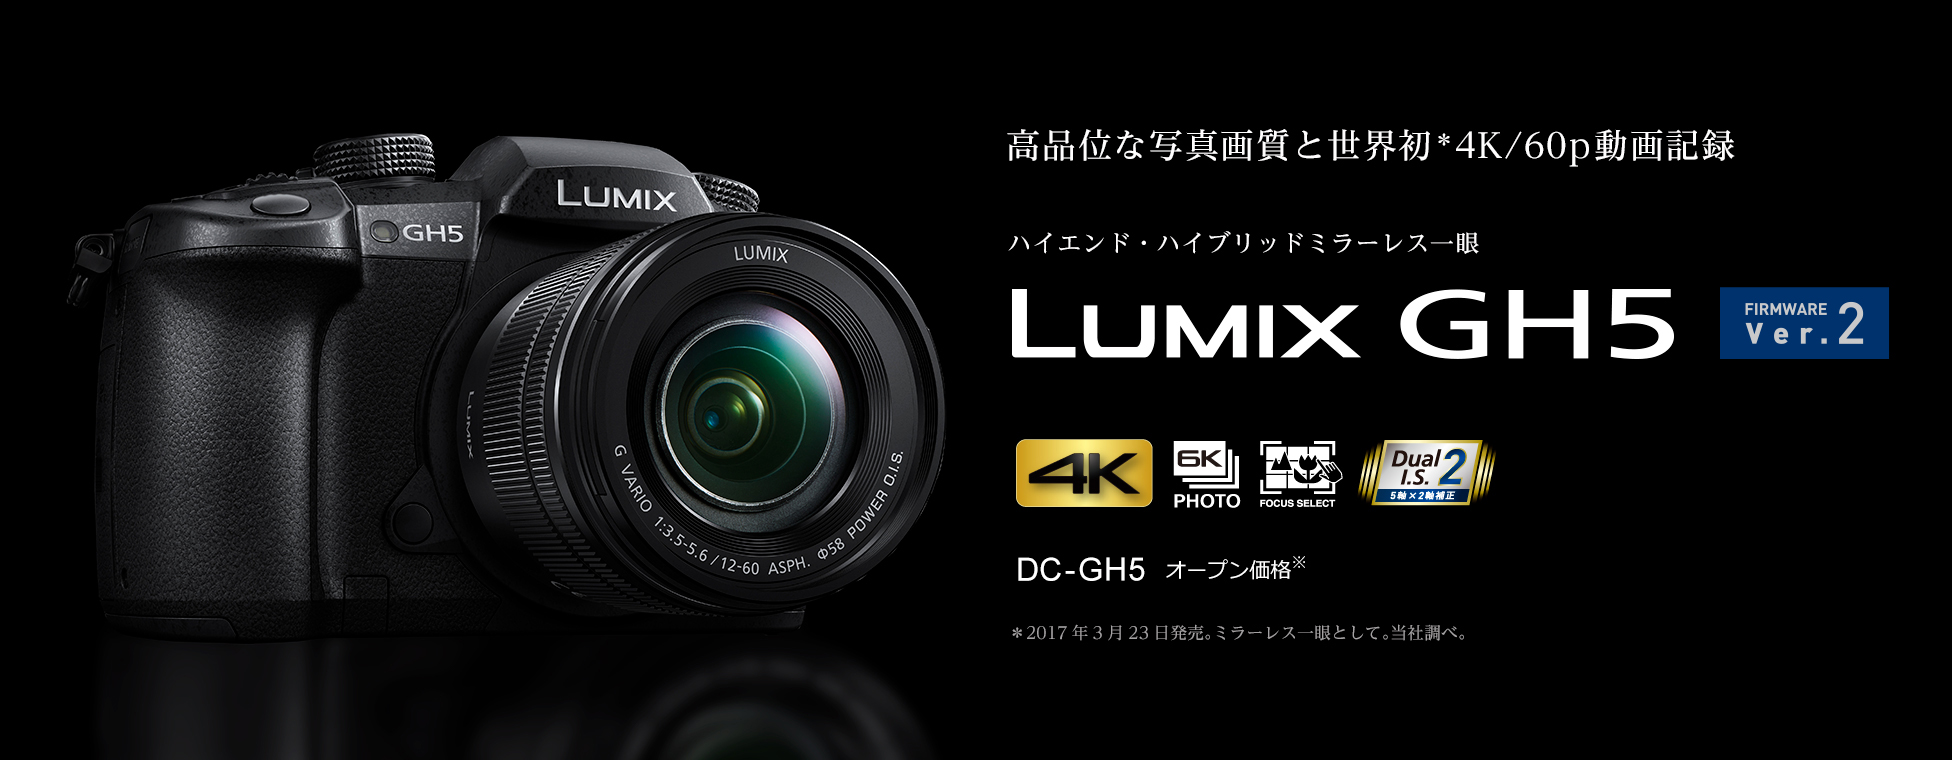 Panasonic(パナソニック) LUMIX(ルミックス) DC-GH5